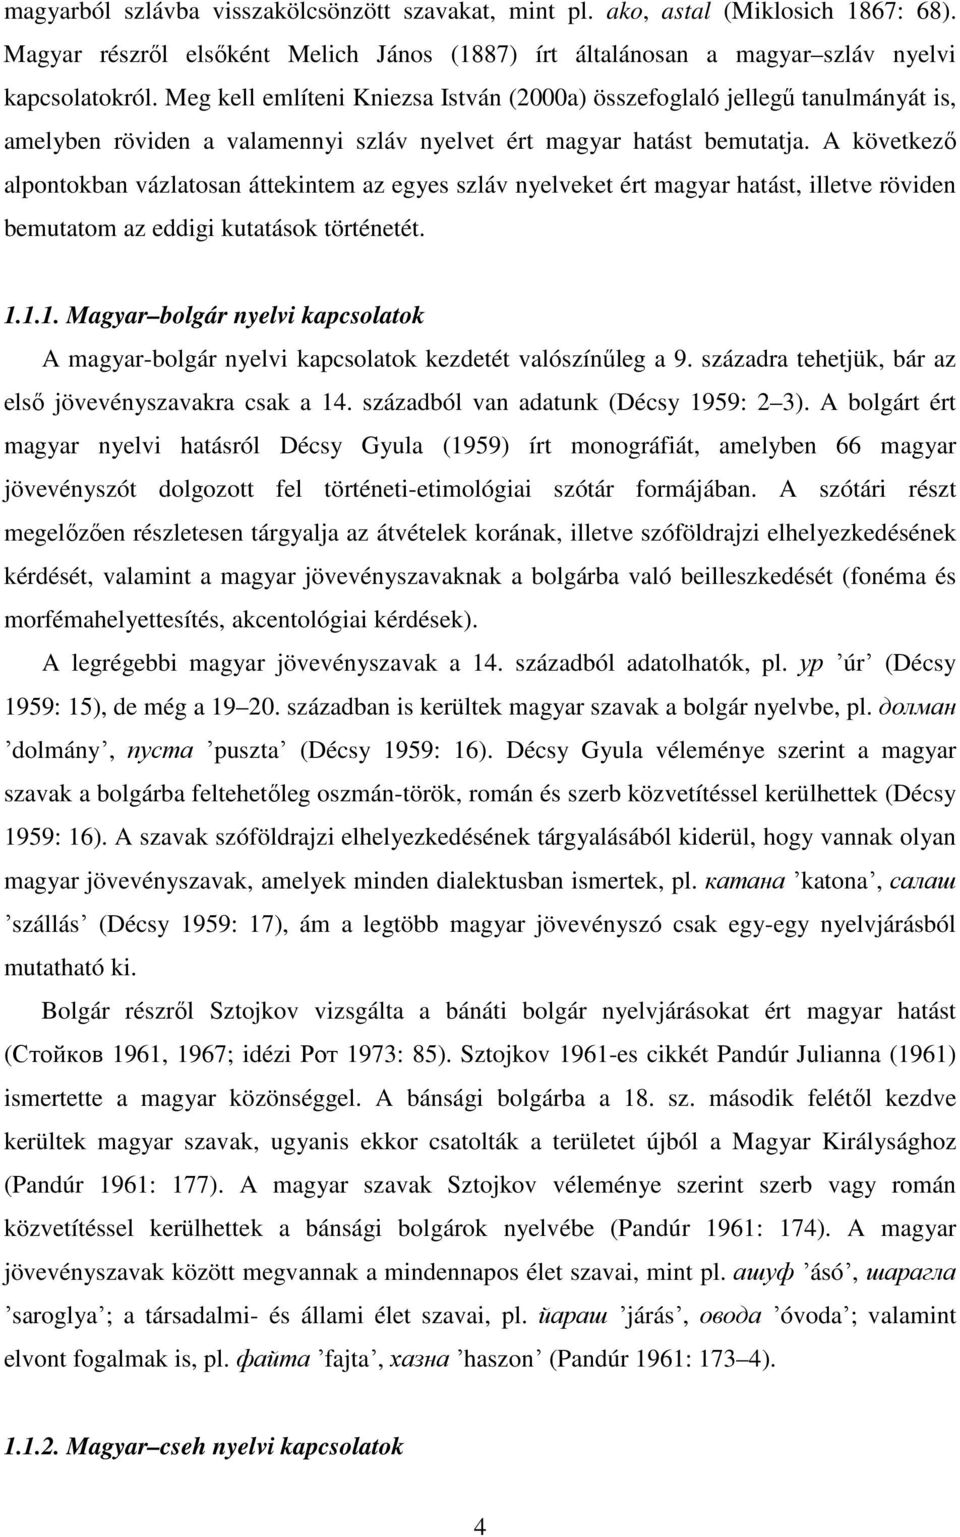 A következő alpontokban vázlatosan áttekintem az egyes szláv nyelveket ért magyar hatást, illetve röviden bemutatom az eddigi kutatások történetét. 1.